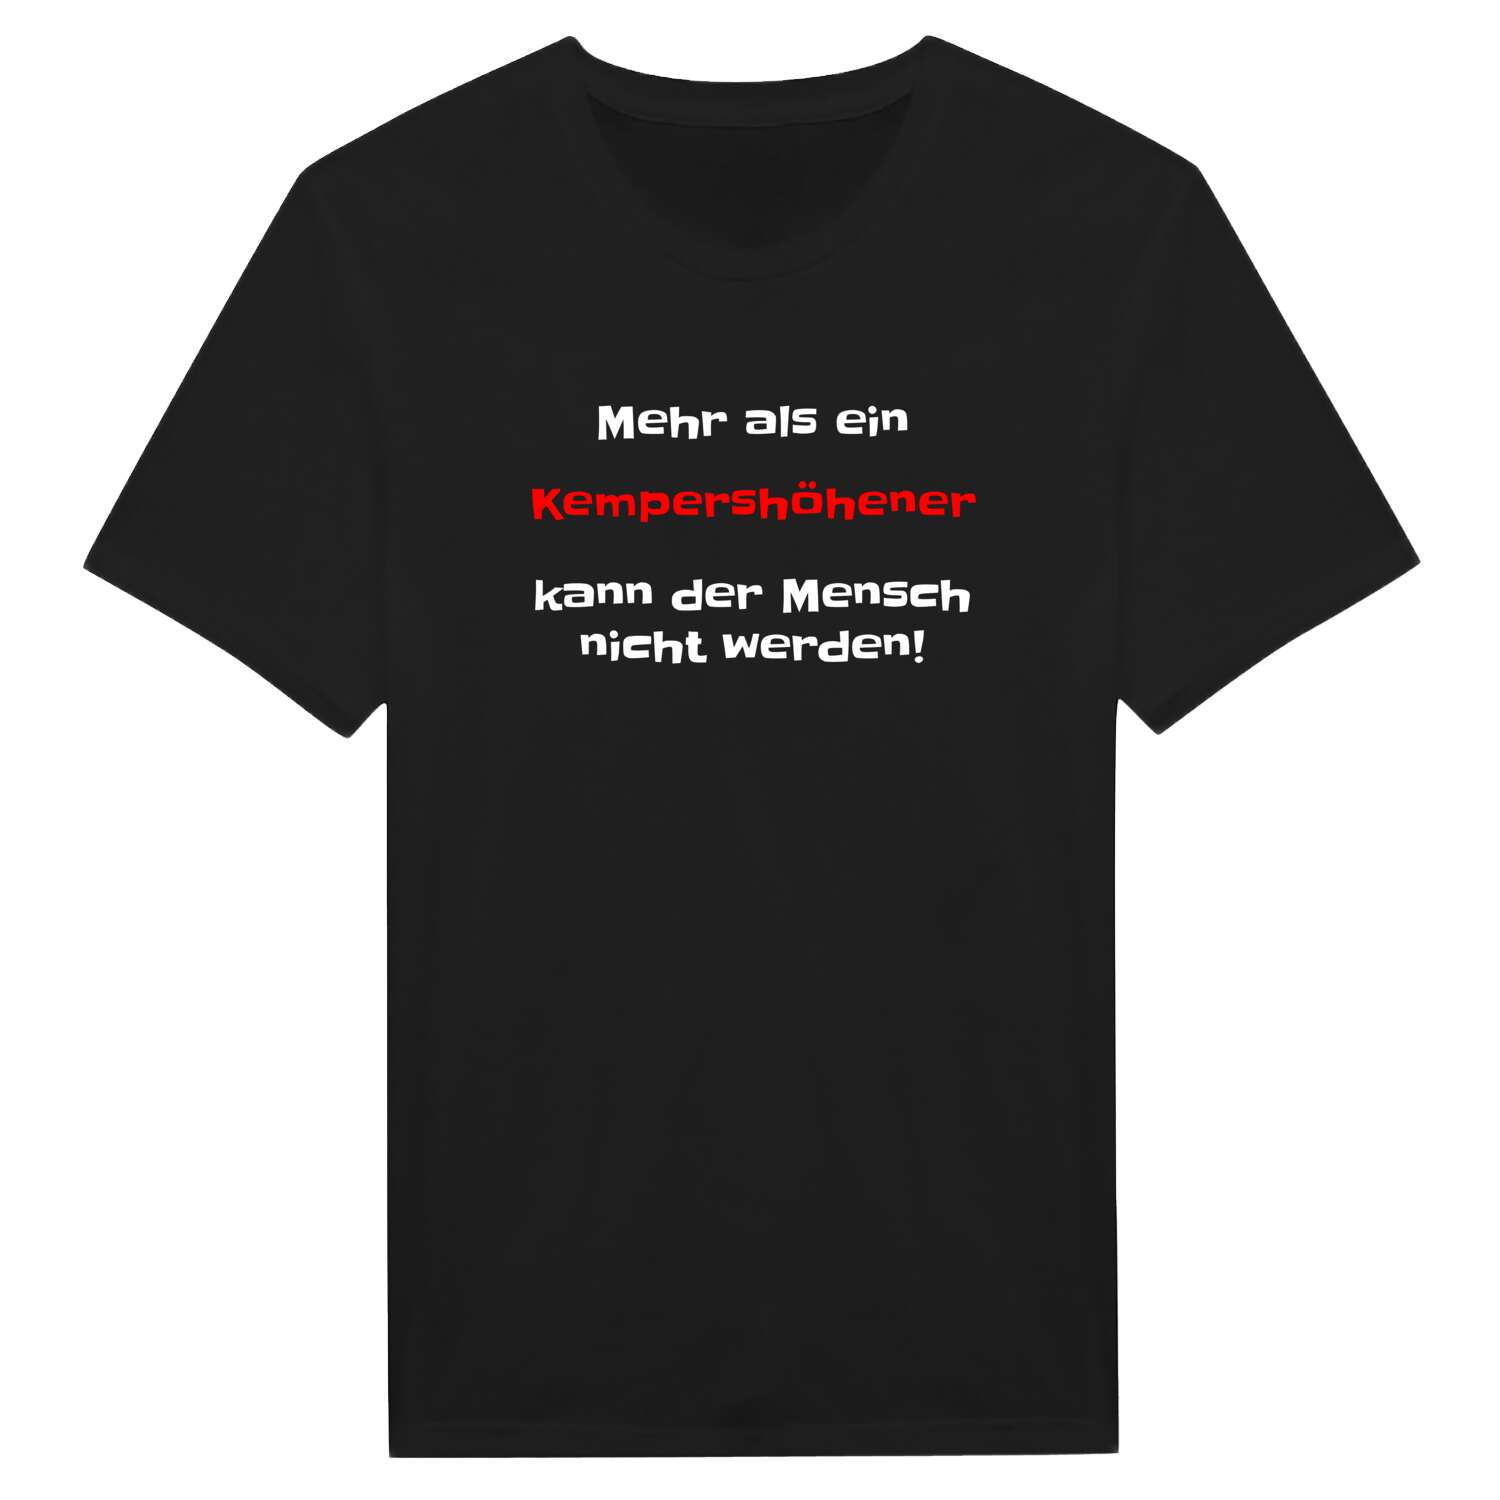 Kempershöhe T-Shirt »Mehr als ein«